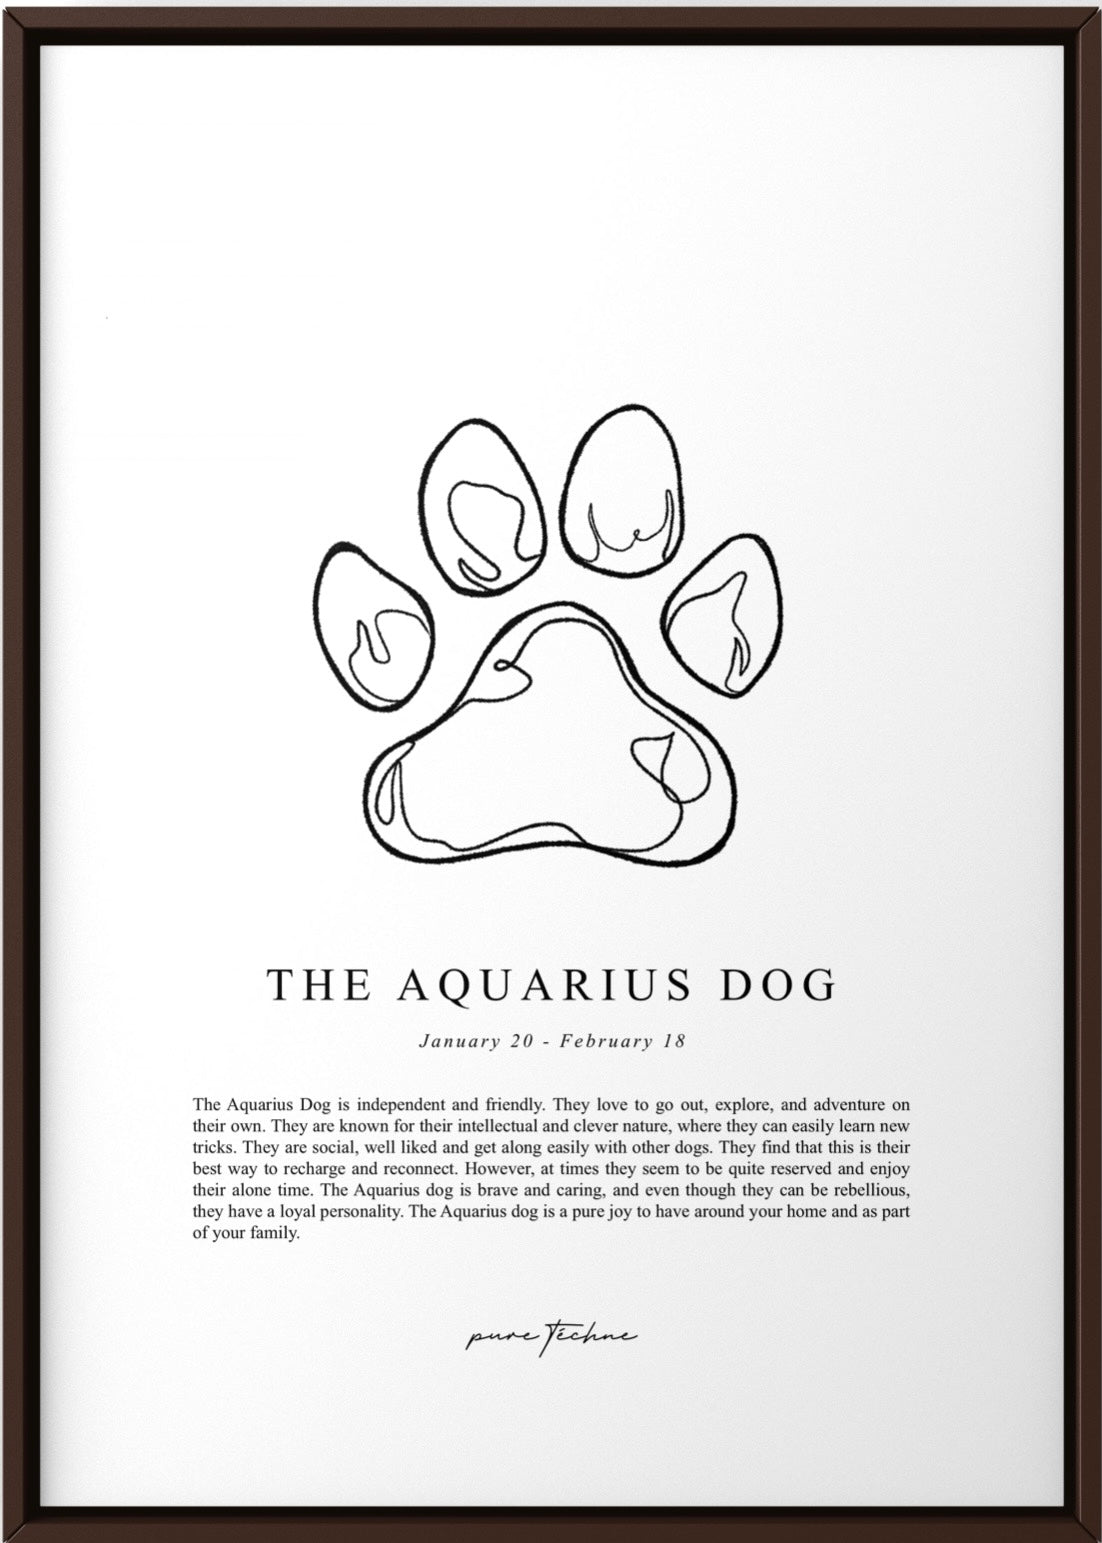 The 'Aquarius' Dog